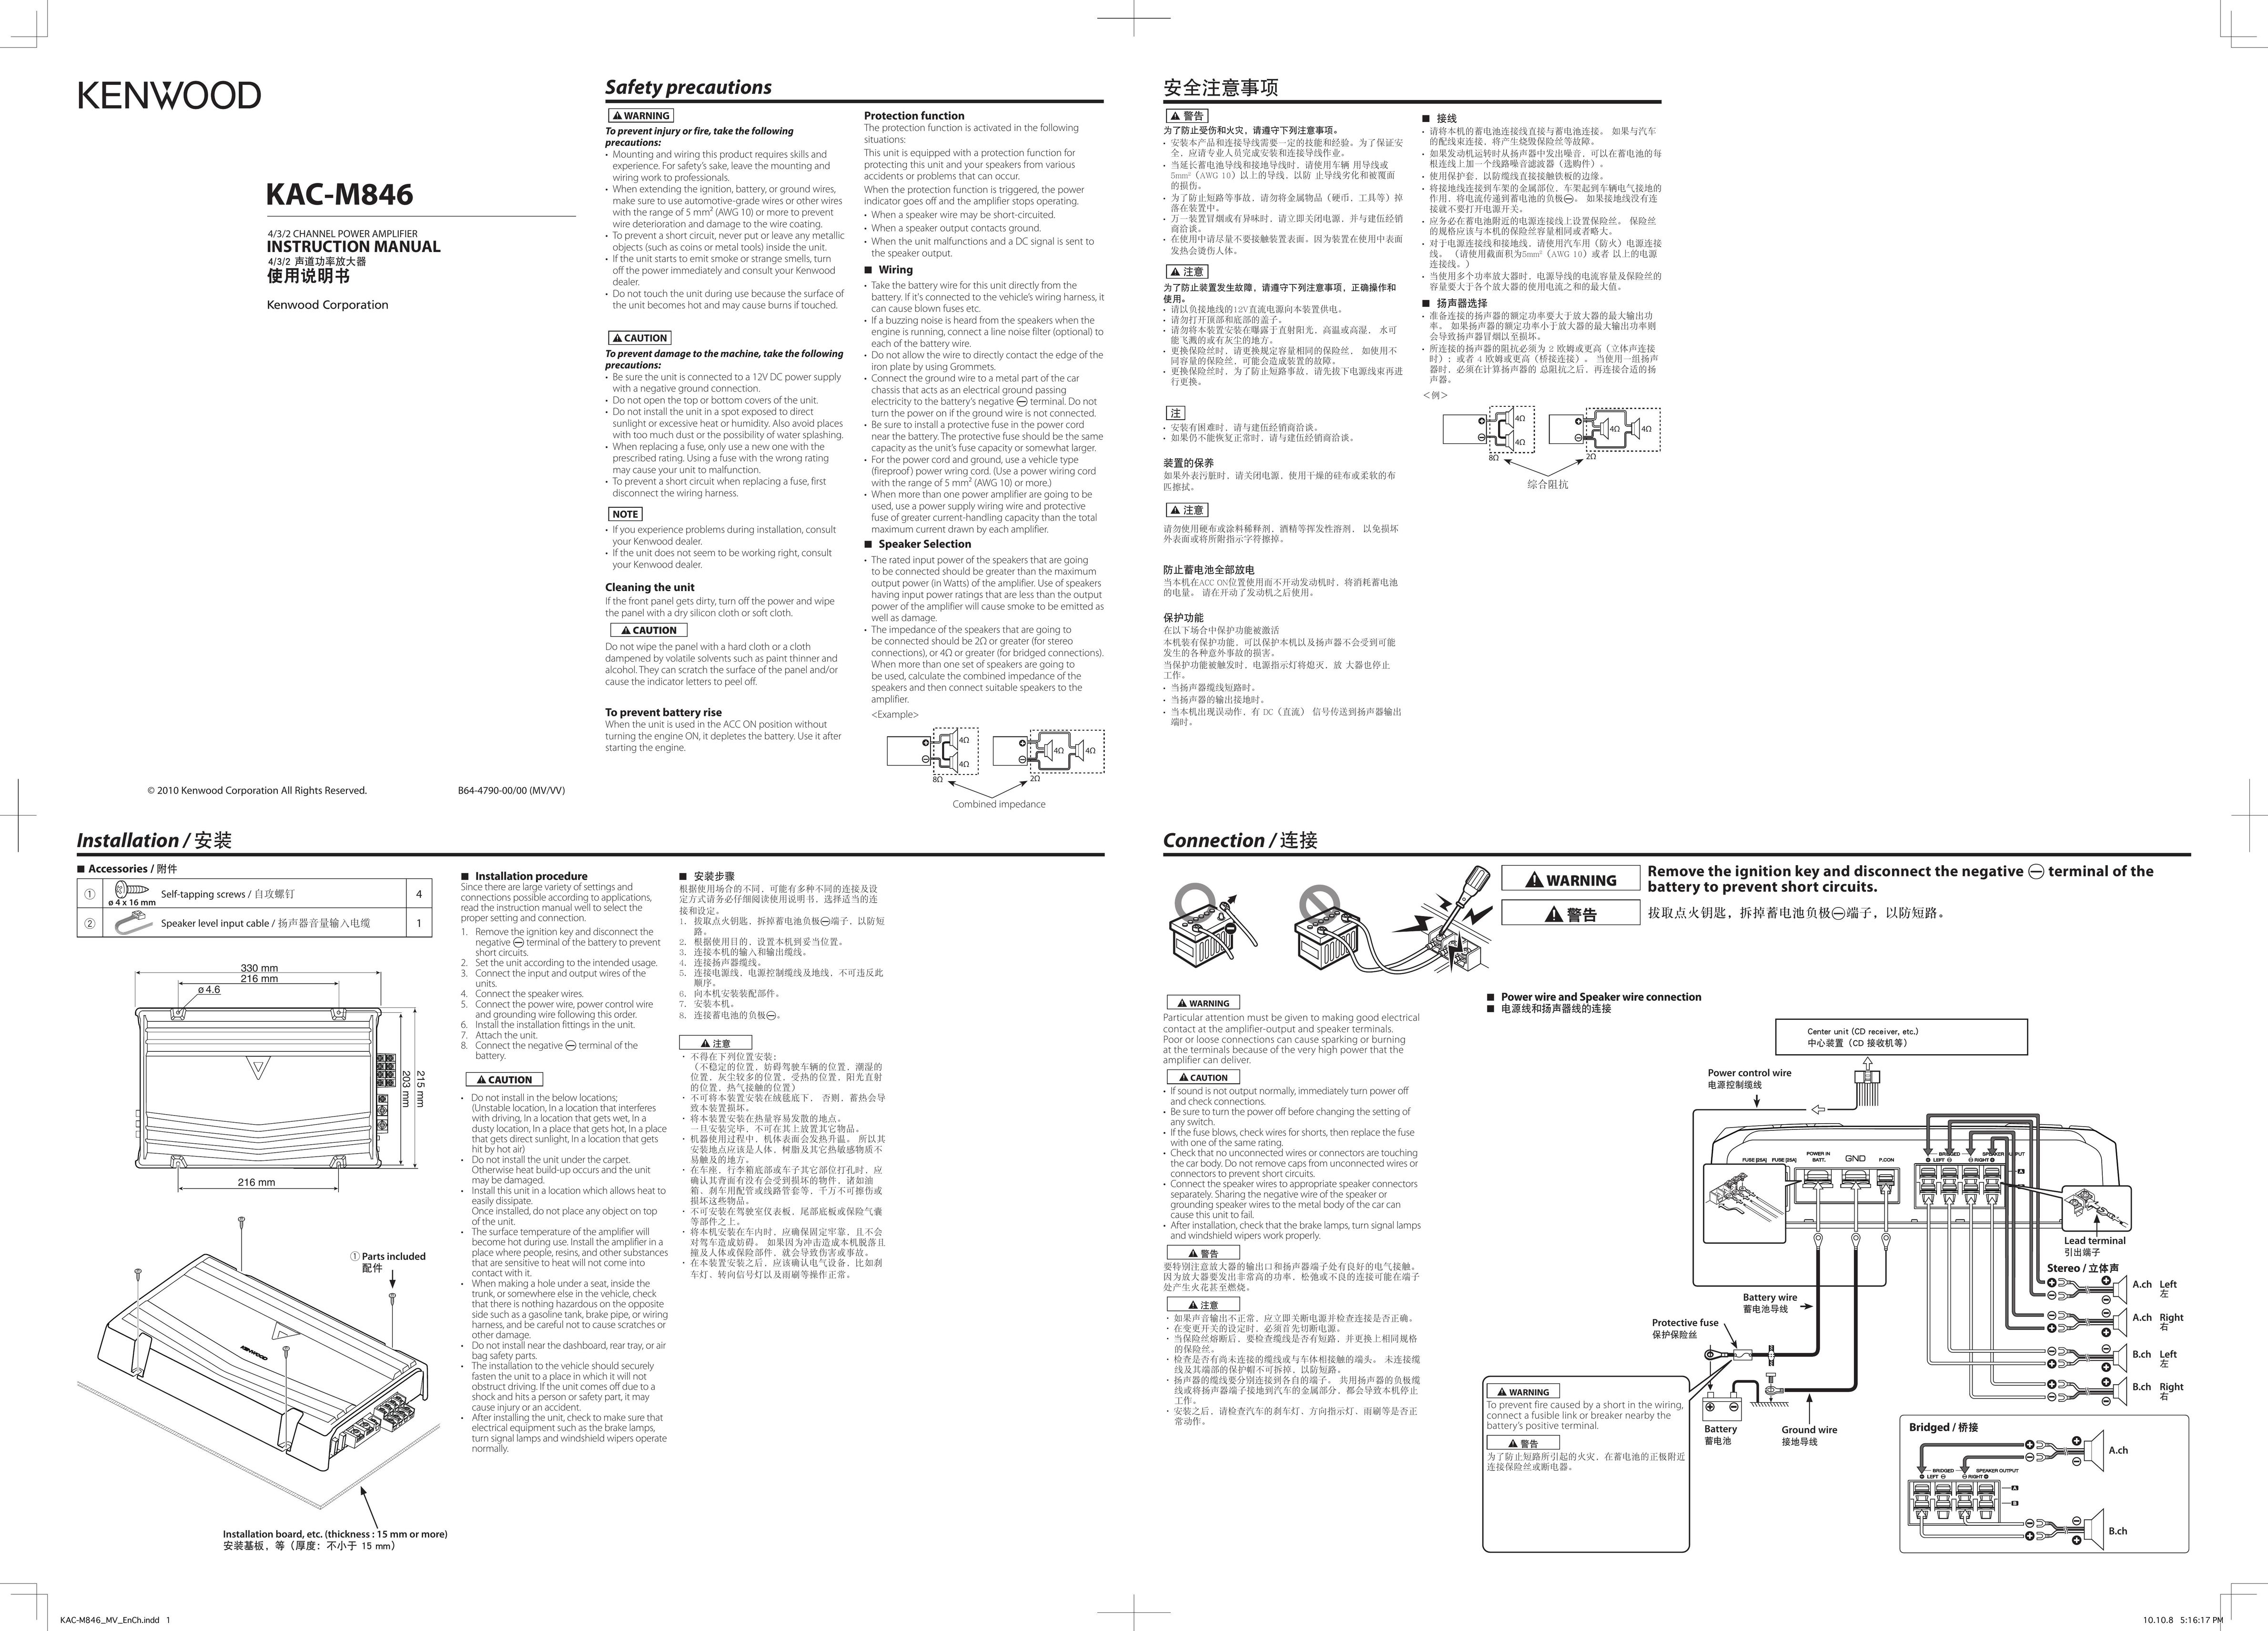 Kenwood KAC-M846 Car Amplifier User Manual